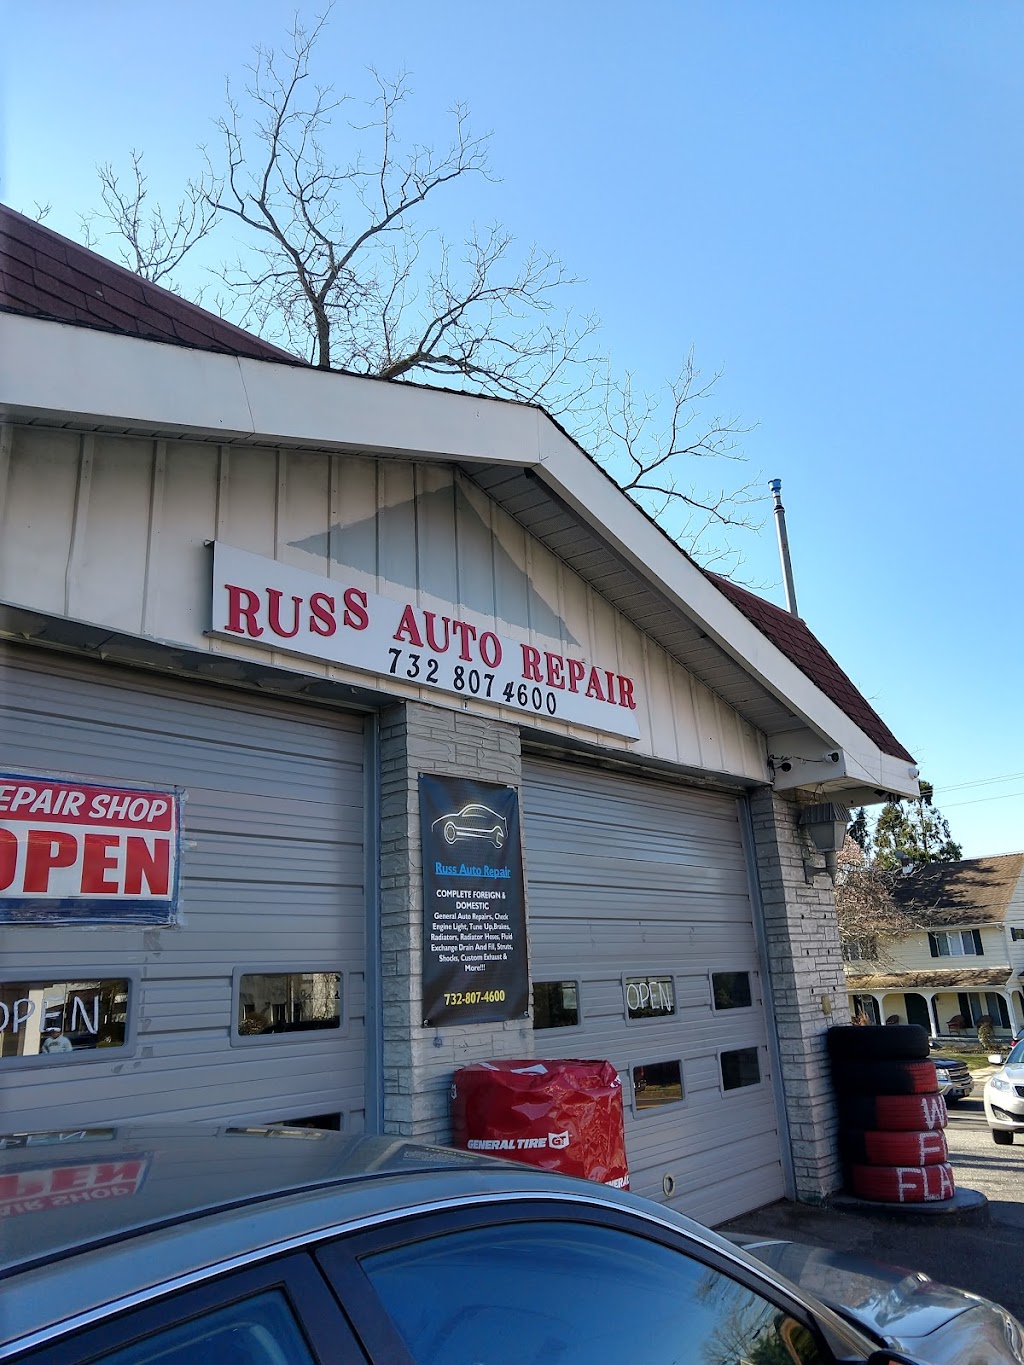 Russ auto repair | 3530 NJ-33, Neptune Township, NJ 07753 | Phone: (732) 807-4600